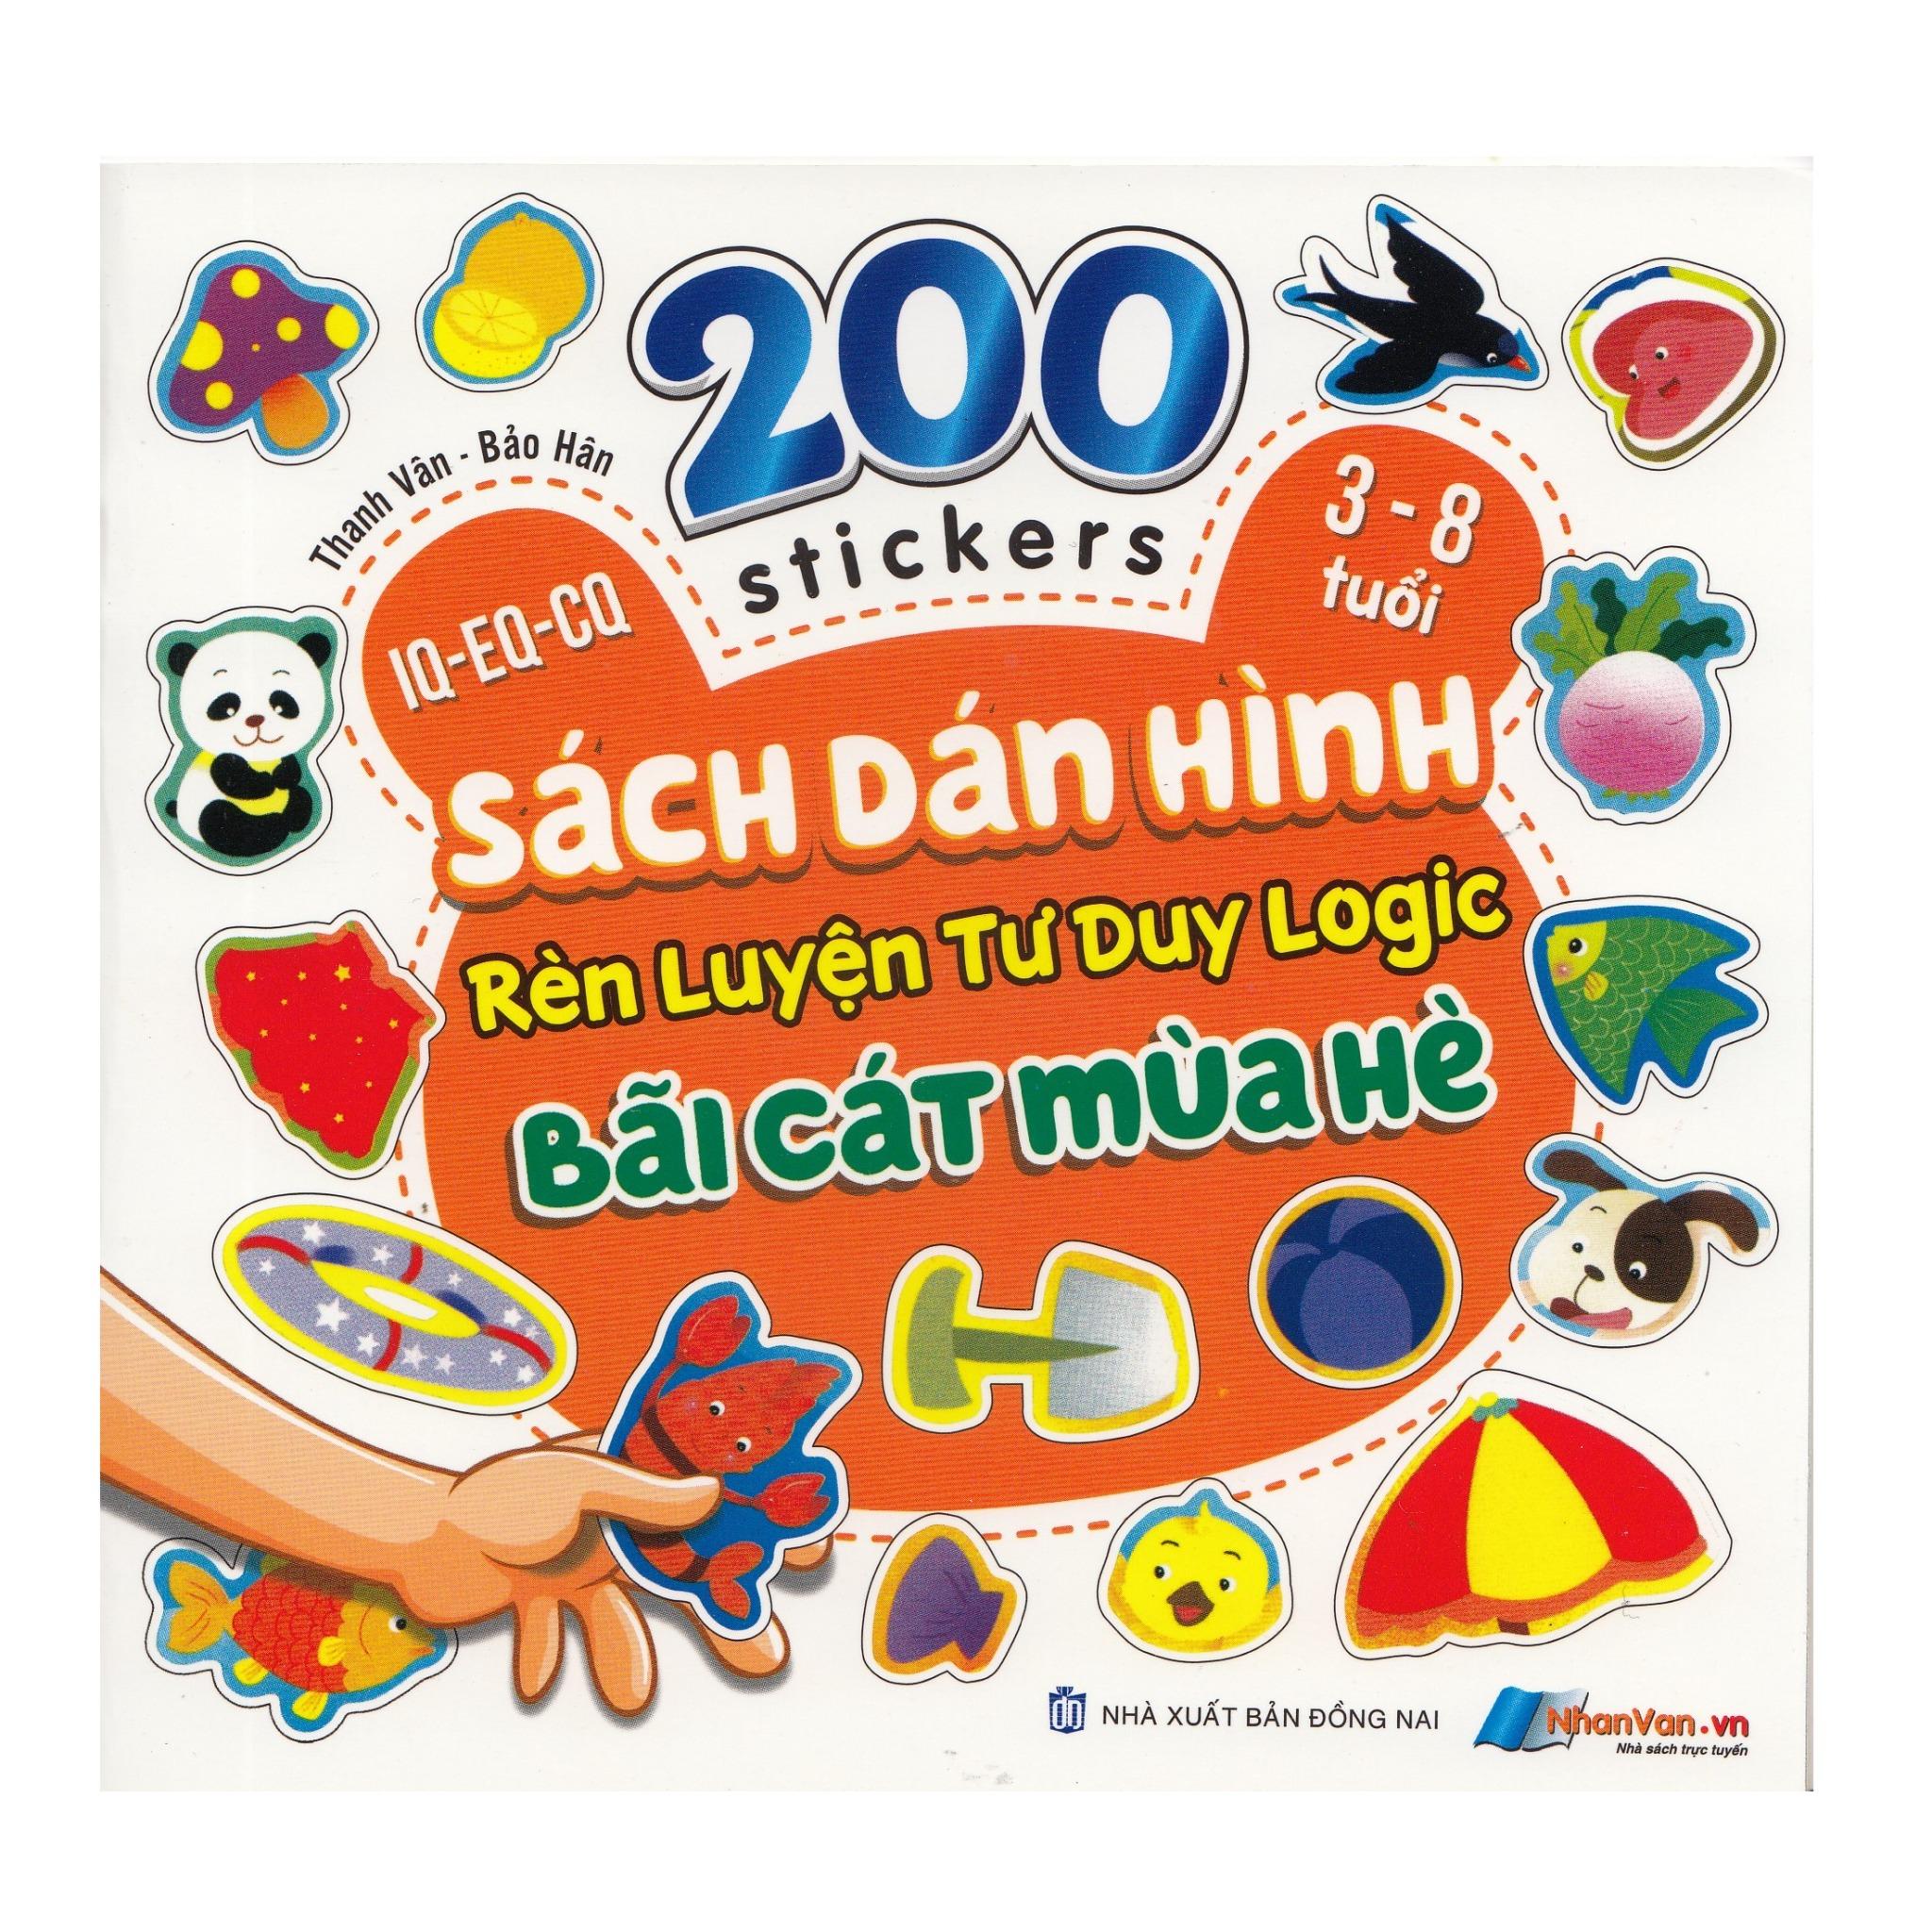 200 Stickers - 3-8 Tuổi - Sách Dán Hình Rèn Luyện Tư Duy Logic - Bãi Cát Mùa Hè